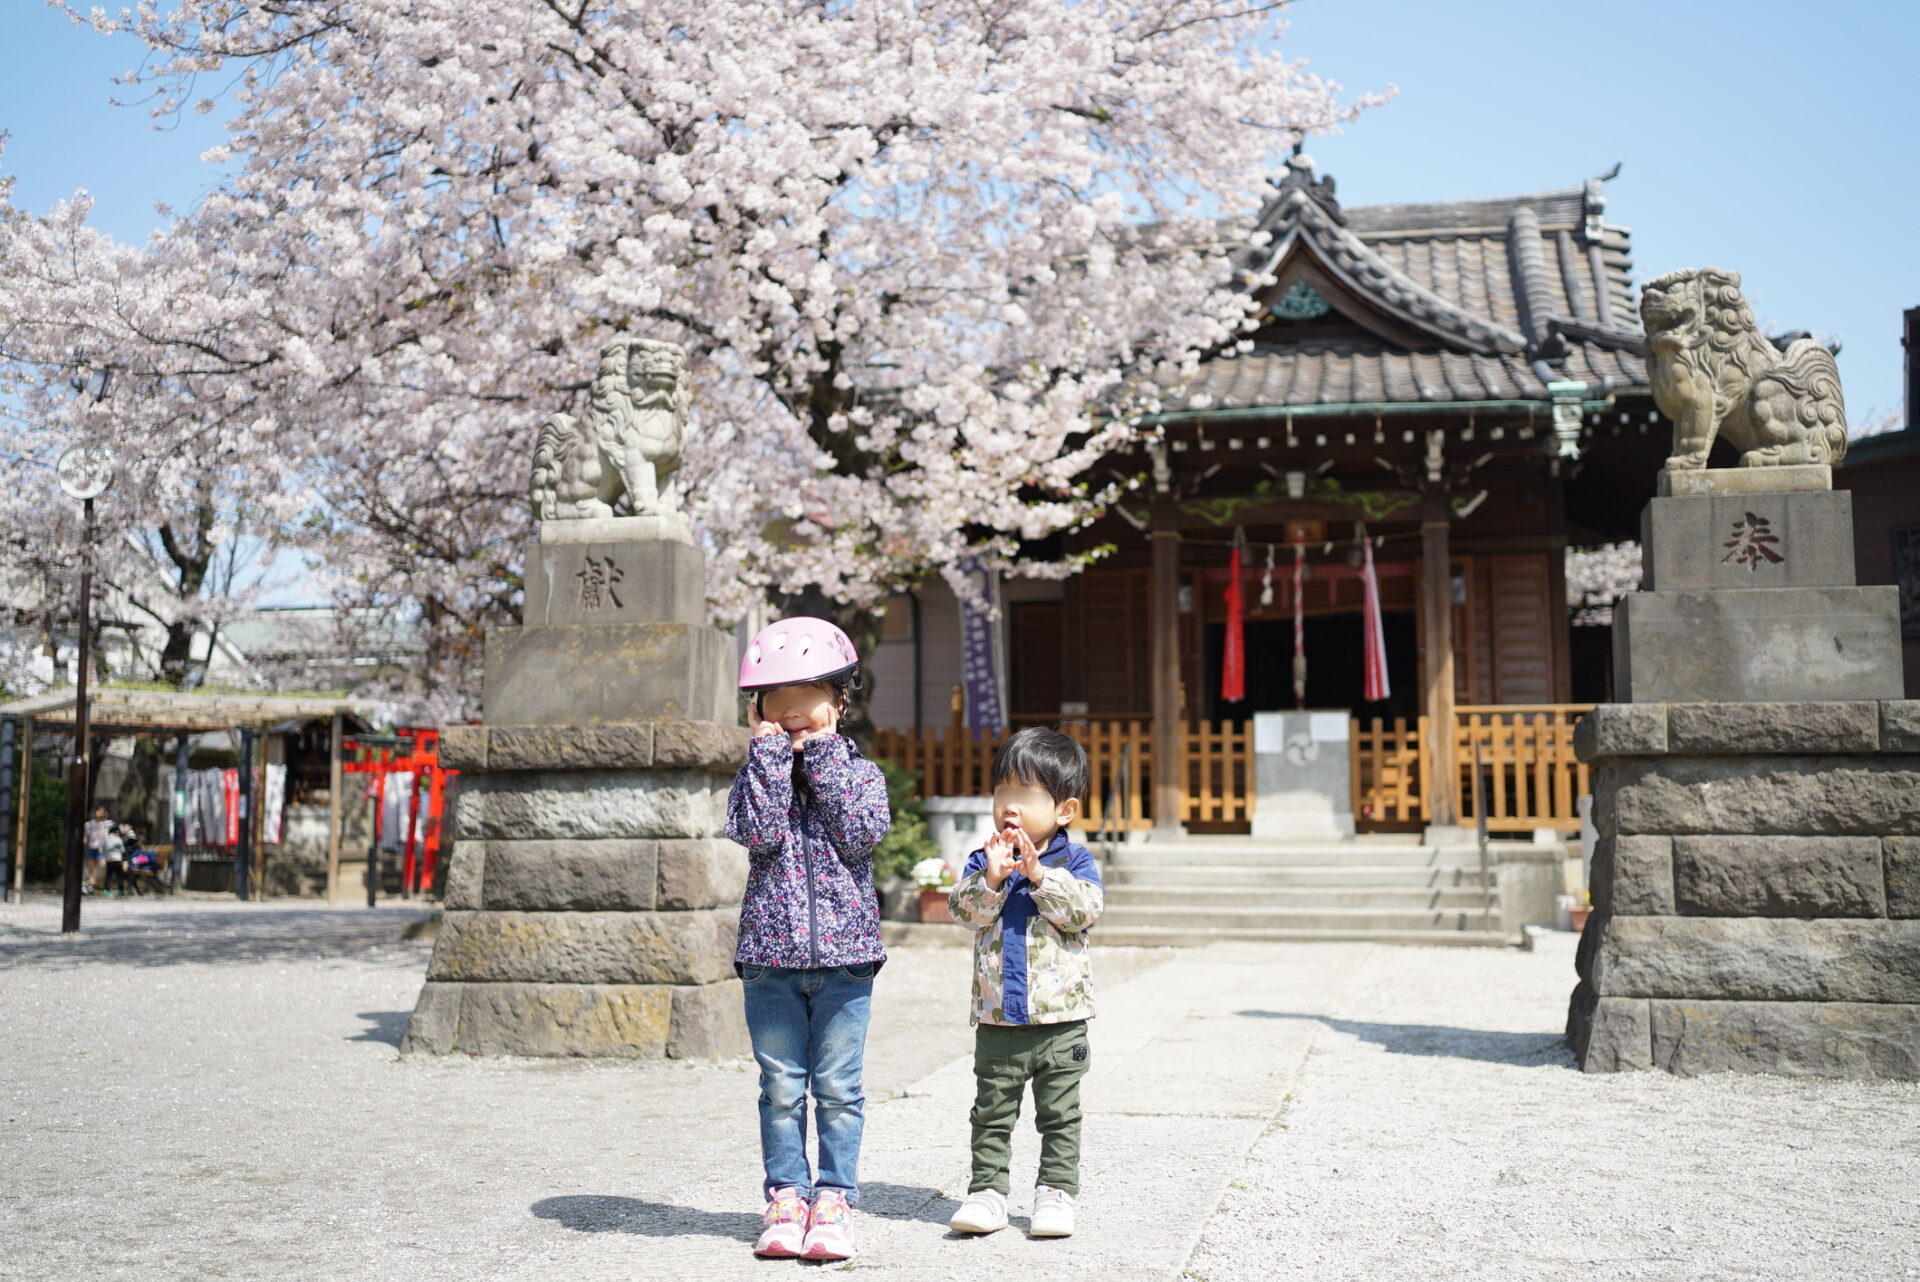 桜と子供の撮影で機嫌よくポーズしている写真